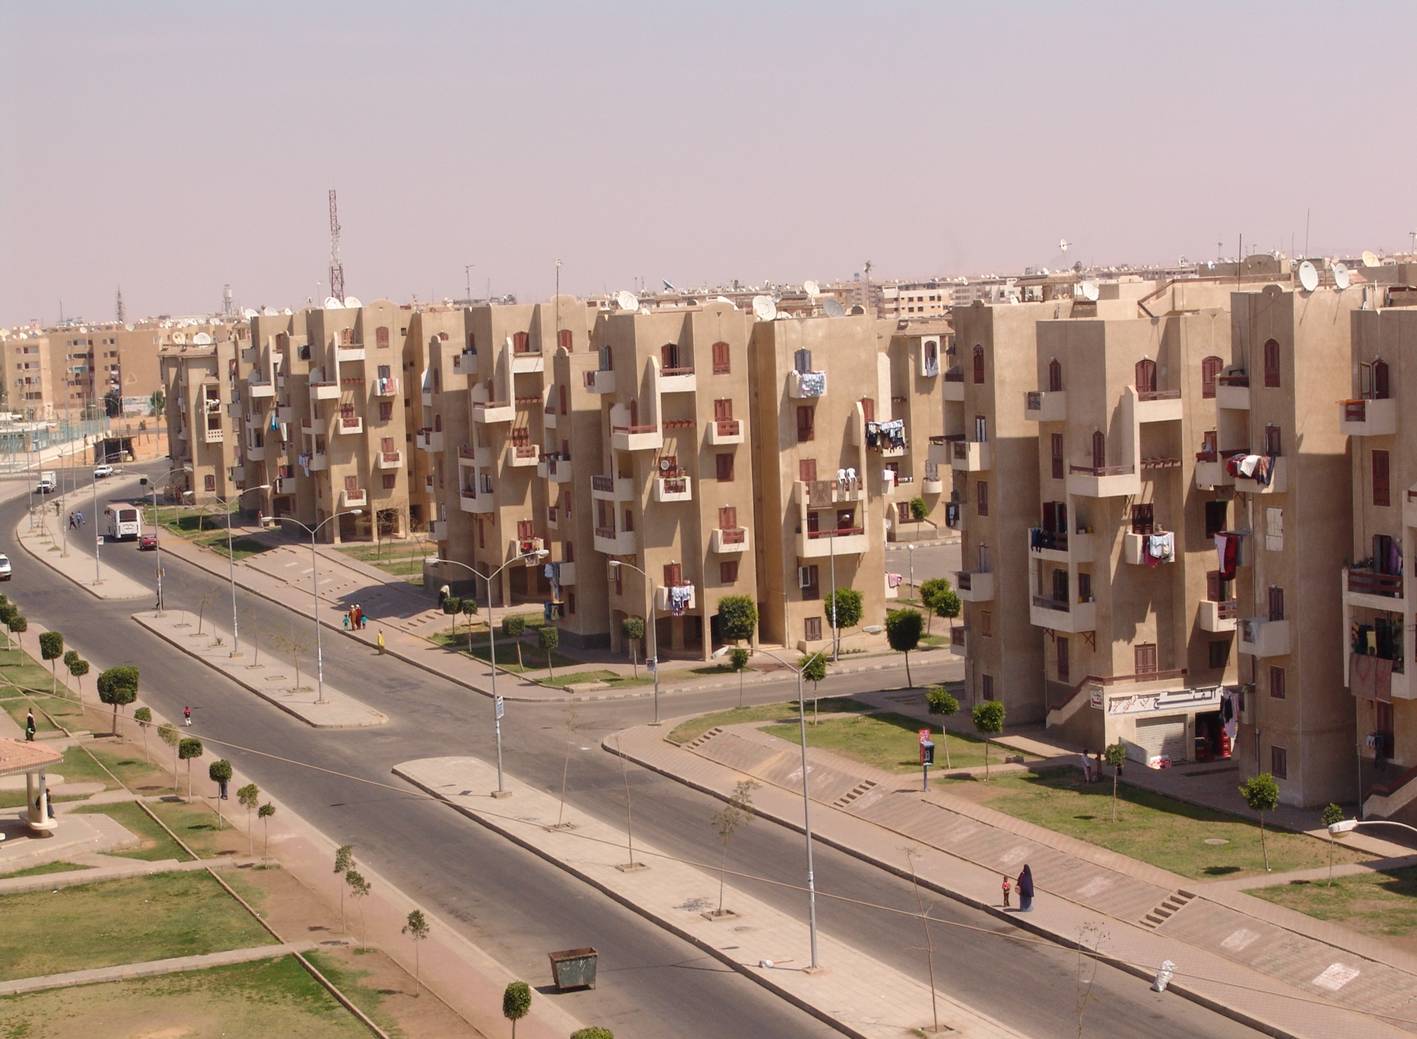   44234 حاجزًا لـ 30145 قطعة أرض طرحتها وزارة الإسكان بنظام القرعة